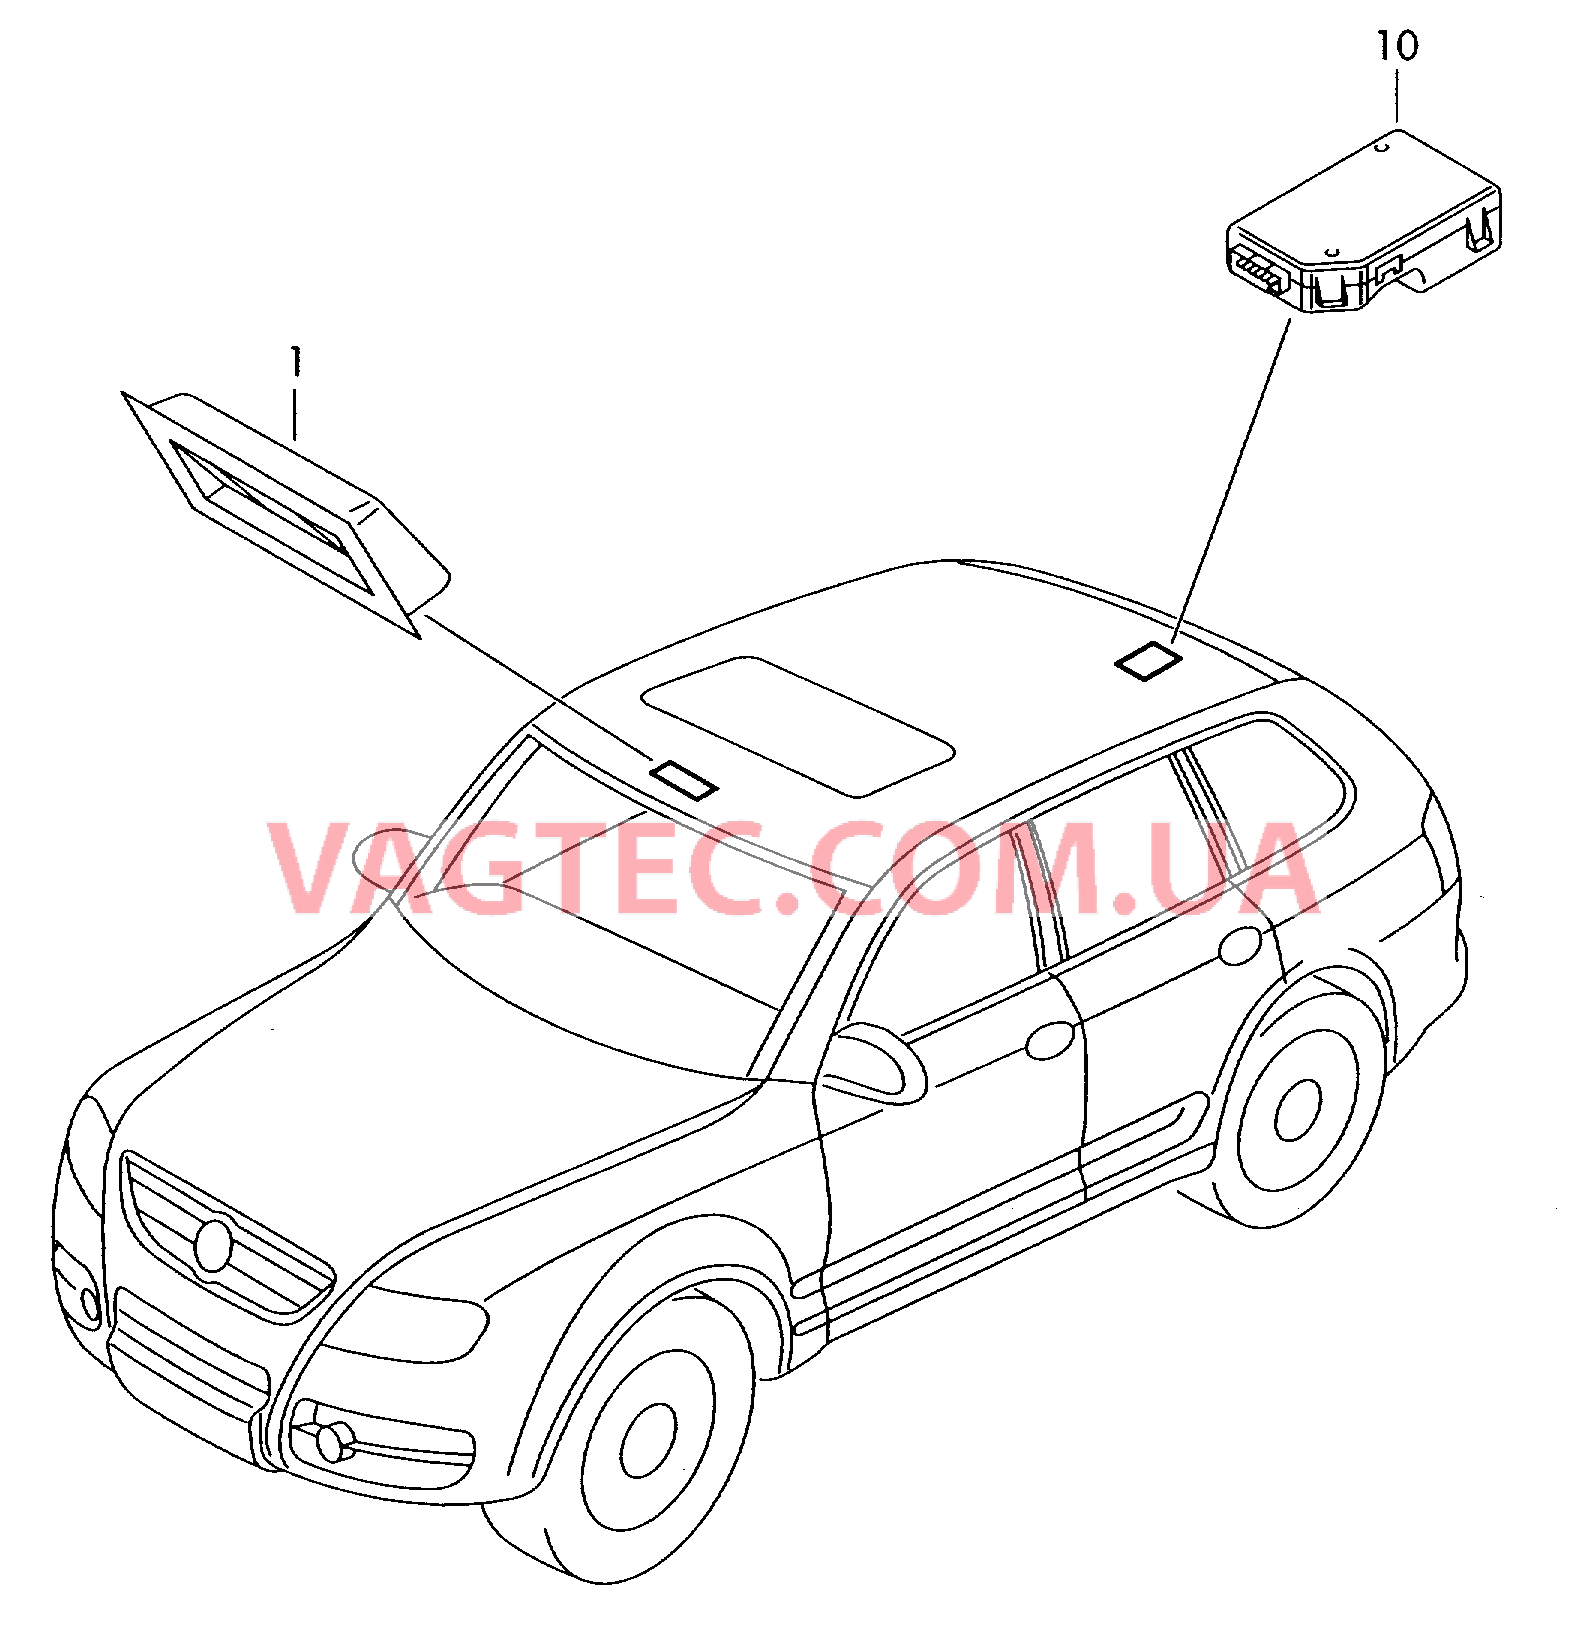 Панель управления и индикации Датчик магнитного поля для автомобилей с системой KOMPASS  для VOLKSWAGEN Touareg 2006